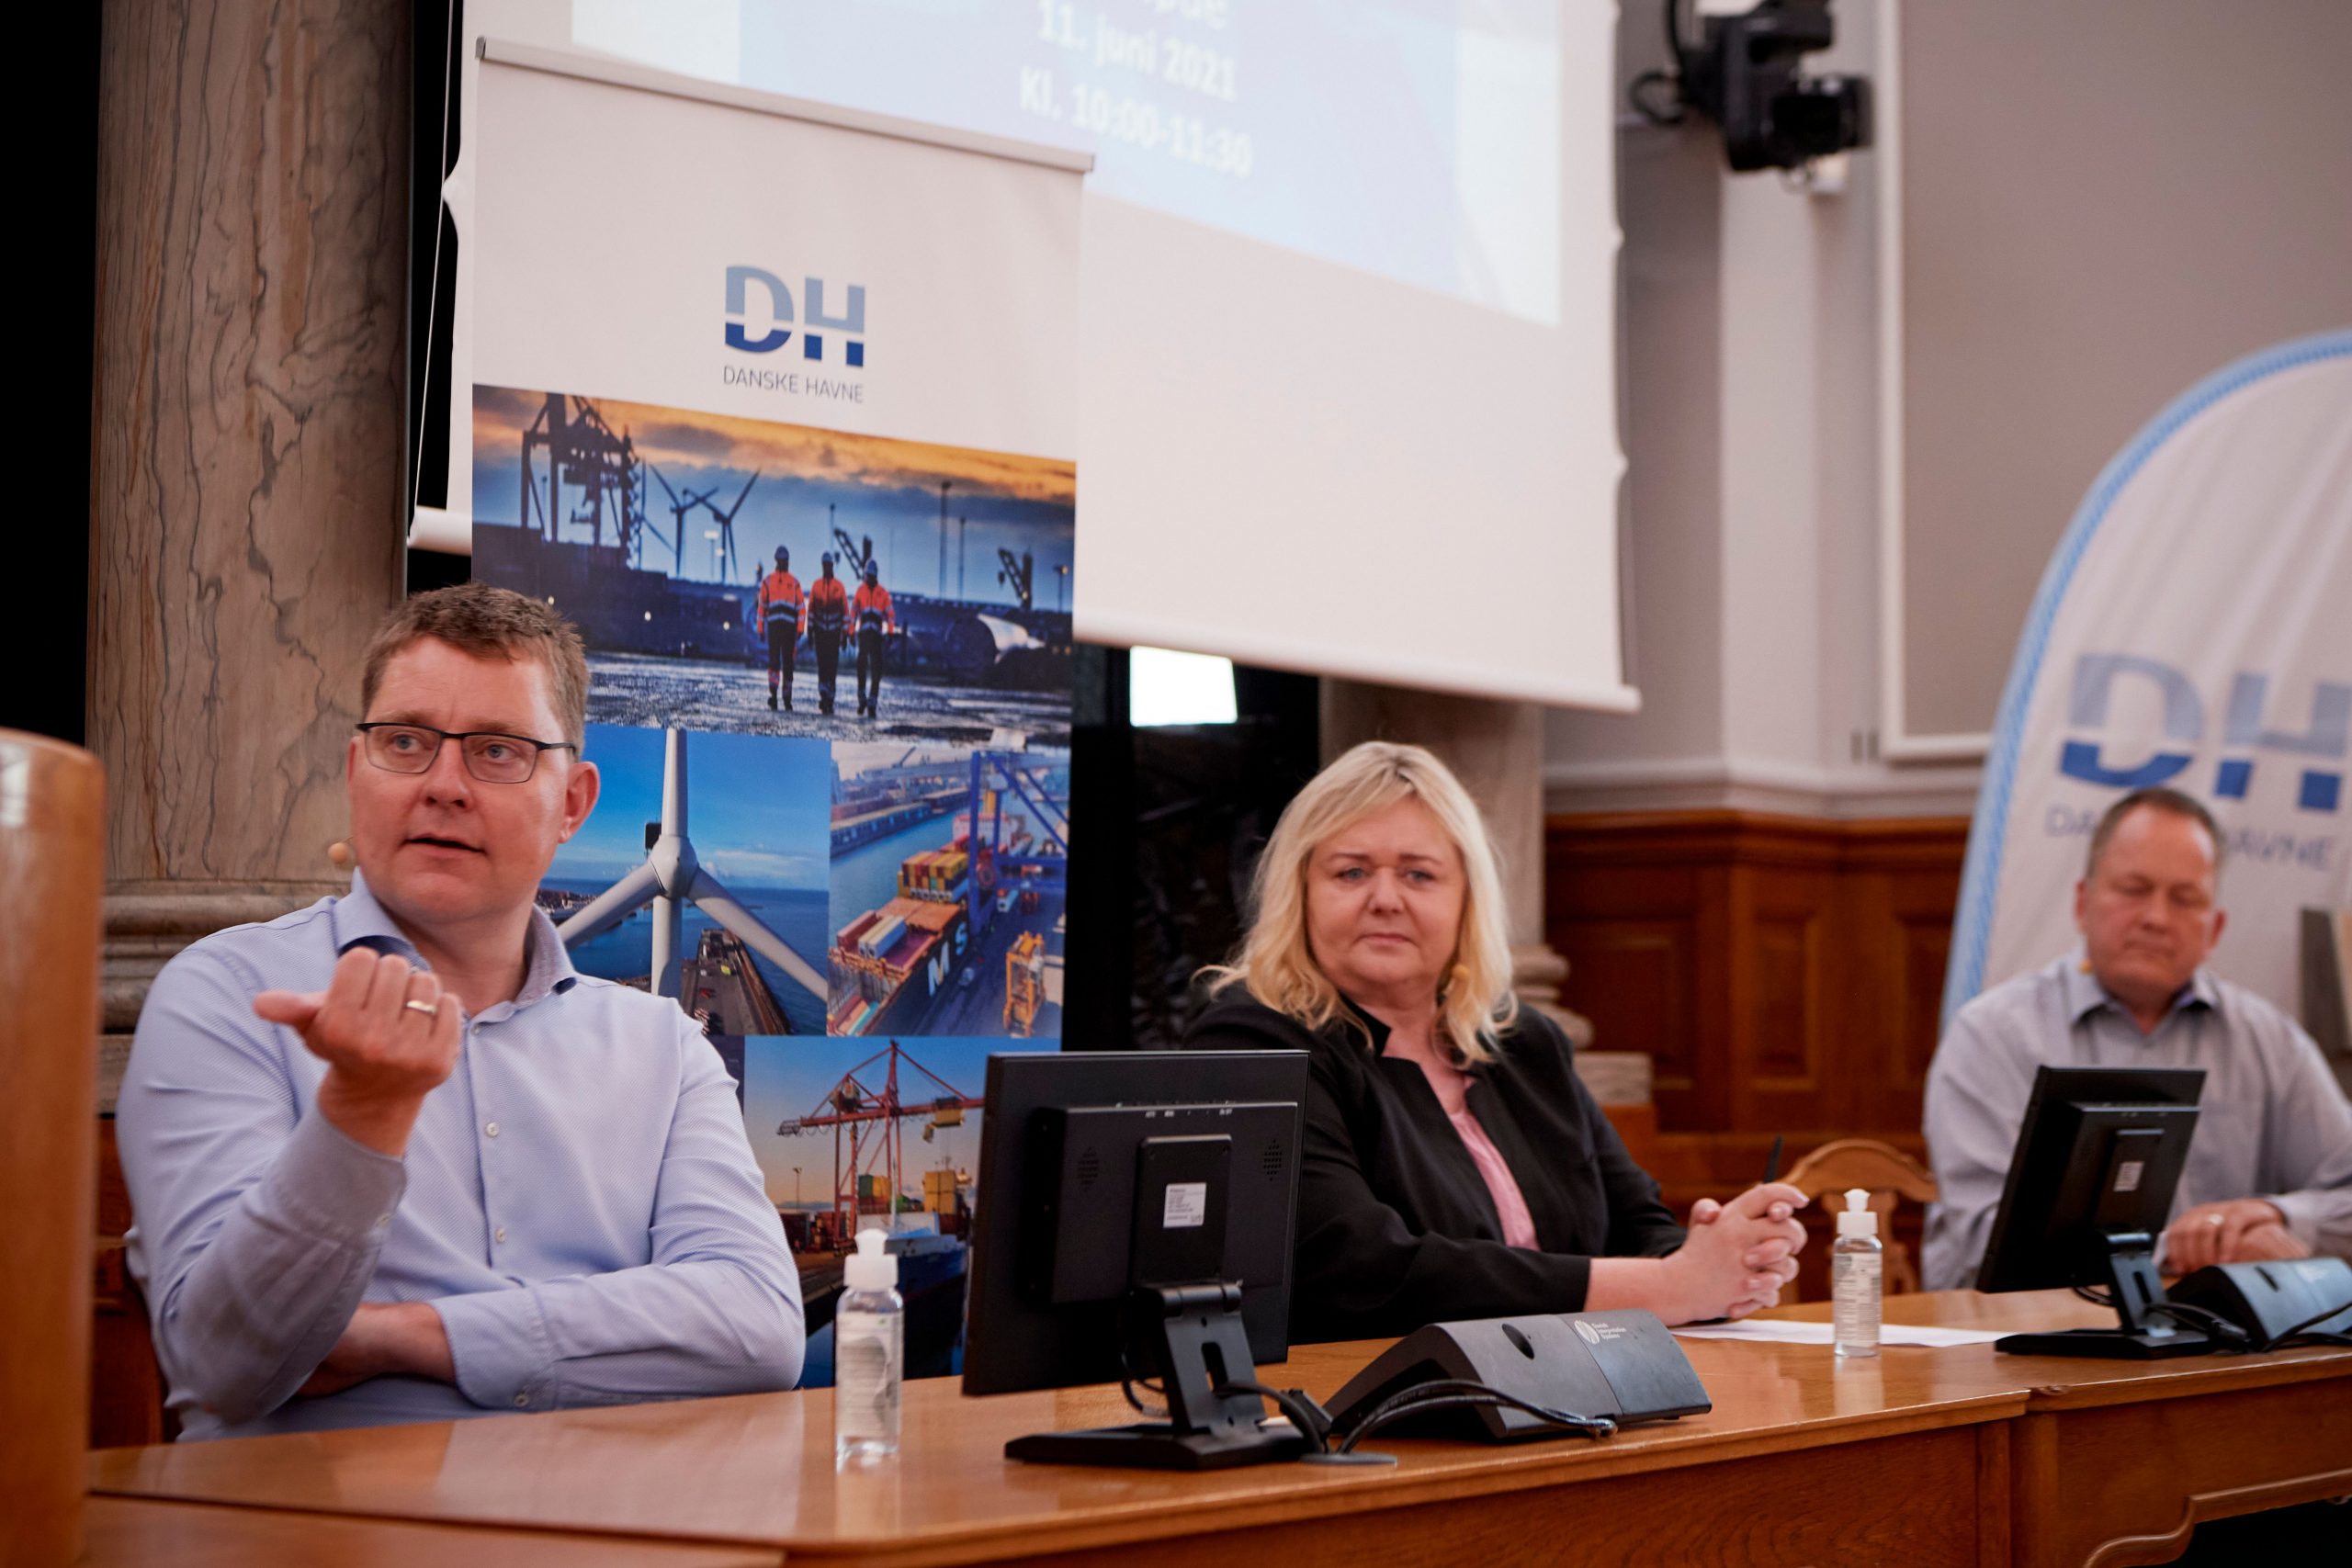 Paneldebat om havnenes rolle i Power-to-X. Fra venstre: Rasmus Helveg Petersen (RV), Mona Juul (KF) & Malte Larsen (S).  Foto: Carsten Lundager.